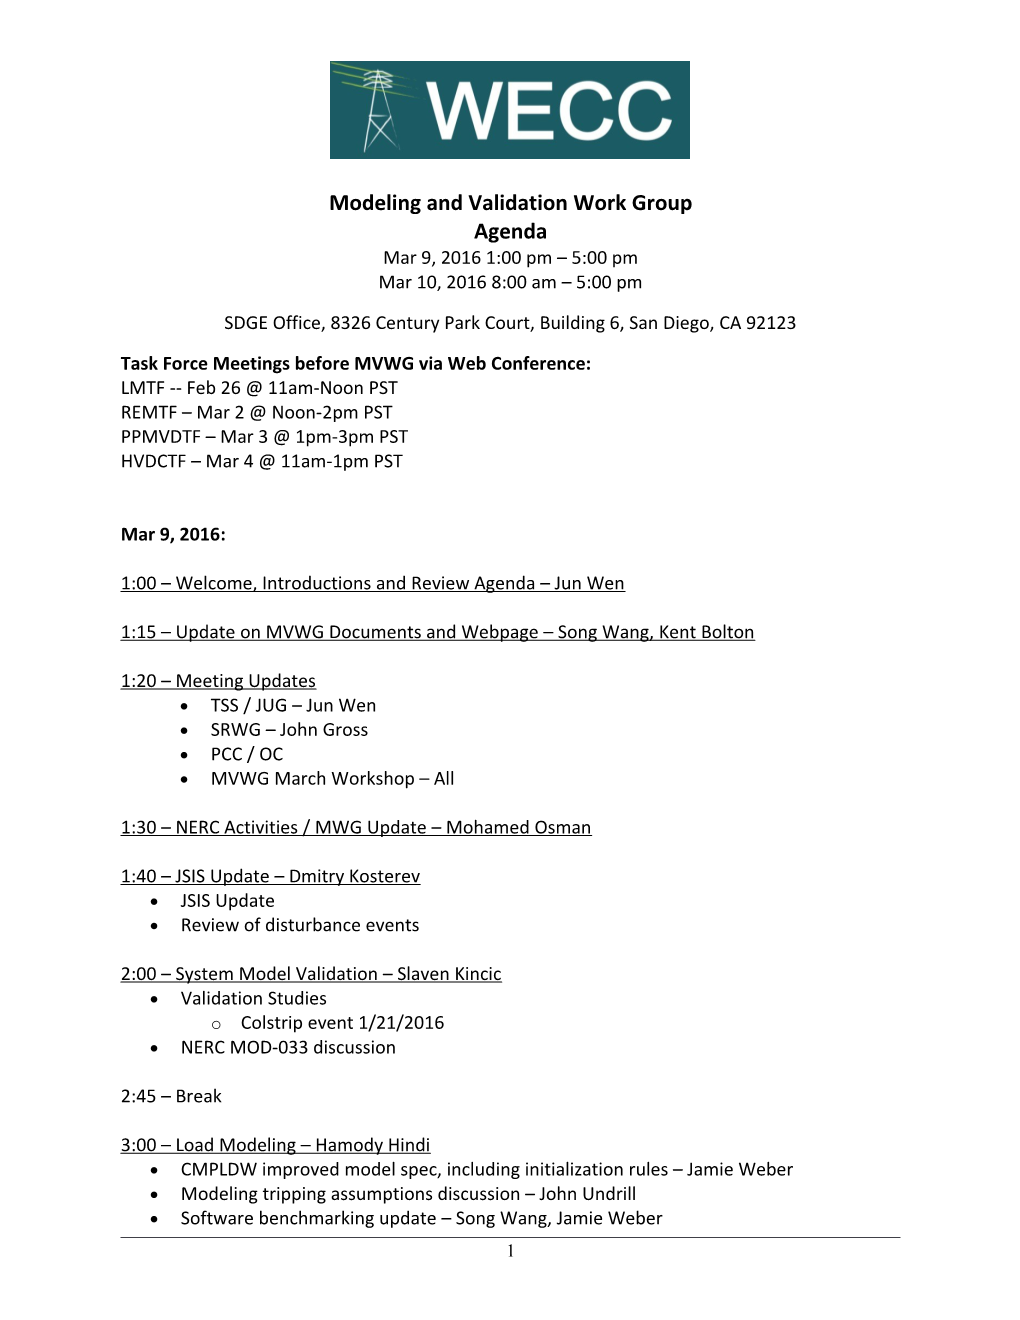 WECC MVWG 2016-3 Meeting Agenda V1.0